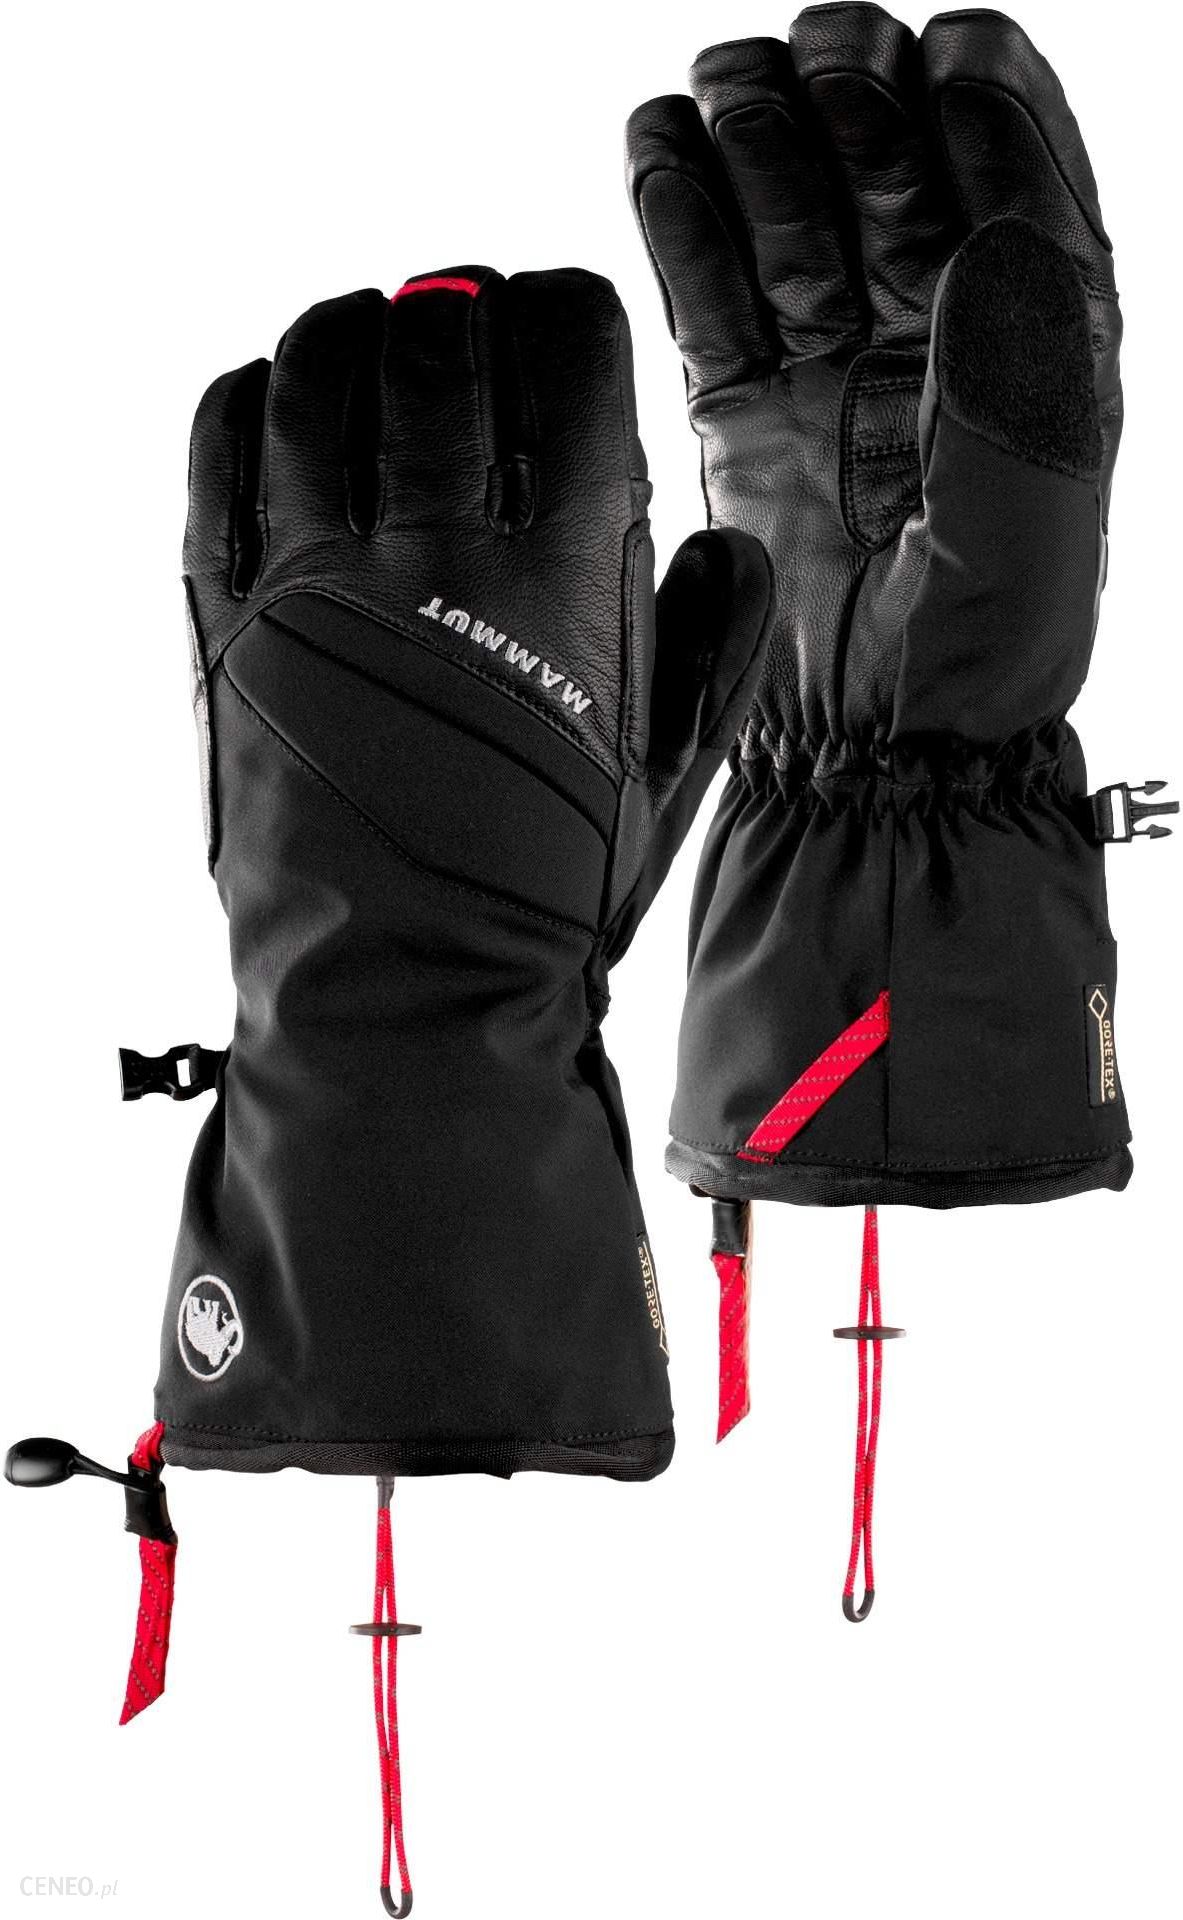 Mammut Meron Thermo 2W1 Glove 9 Black - Ceny i opinie - Ceneo.pl